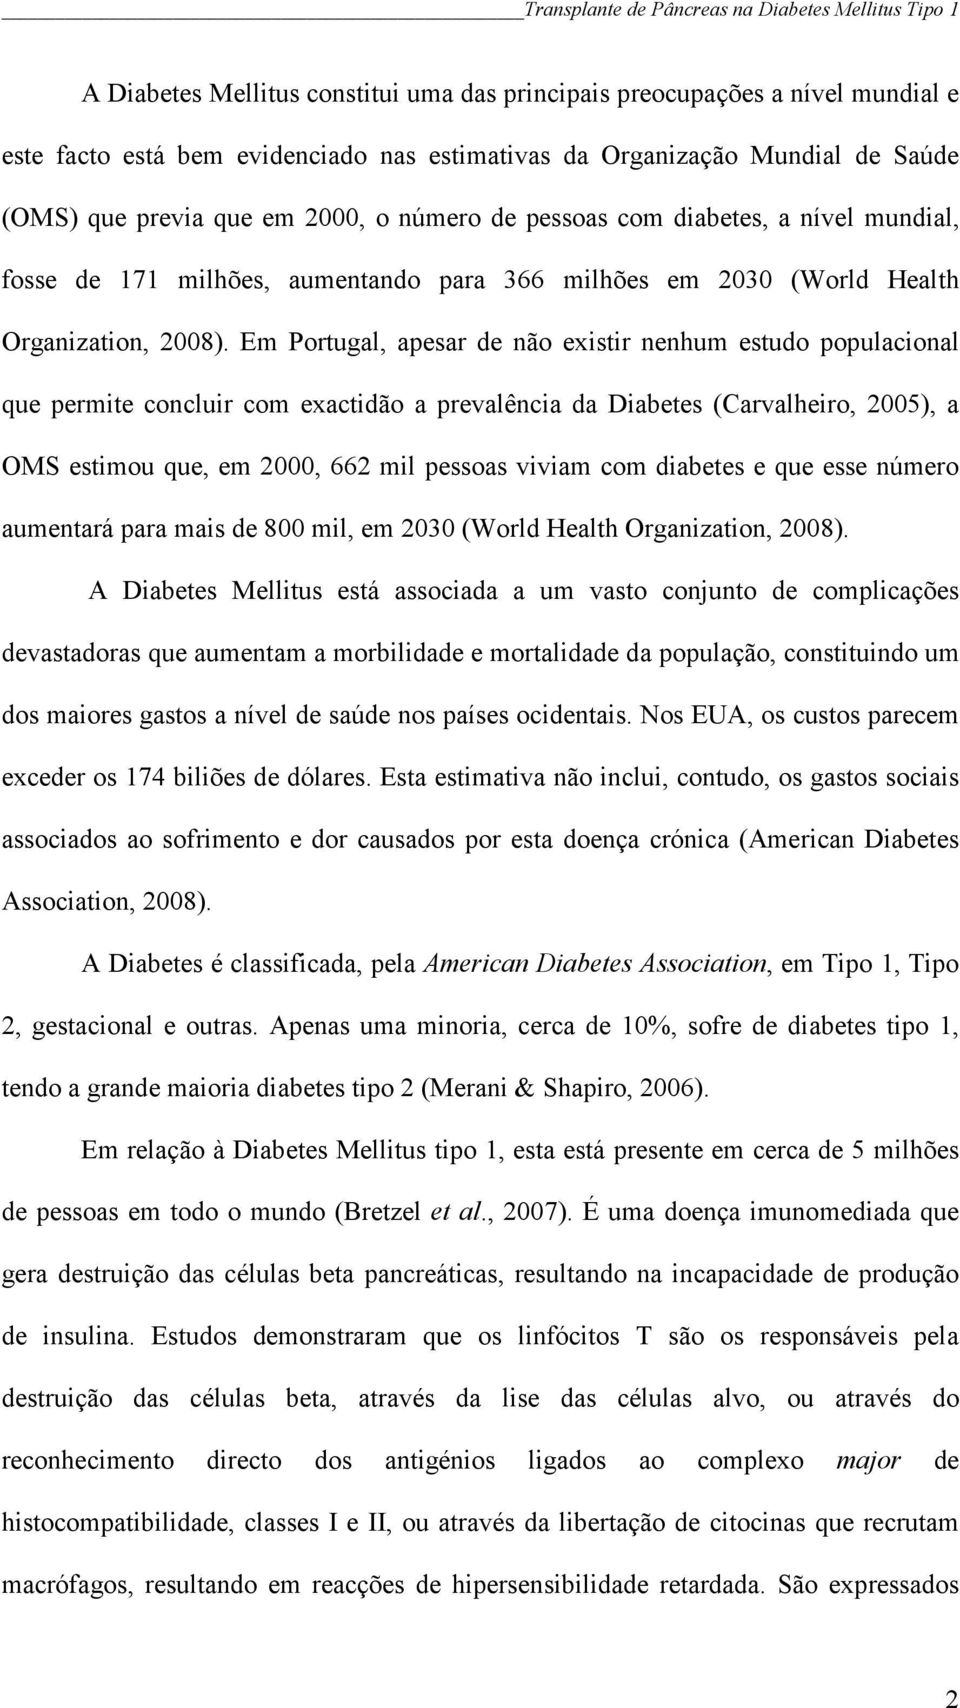 Em Portugal, apesar de não existir nenhum estudo populacional que permite concluir com exactidão a prevalência da Diabetes (Carvalheiro, 2005), a OMS estimou que, em 2000, 662 mil pessoas viviam com